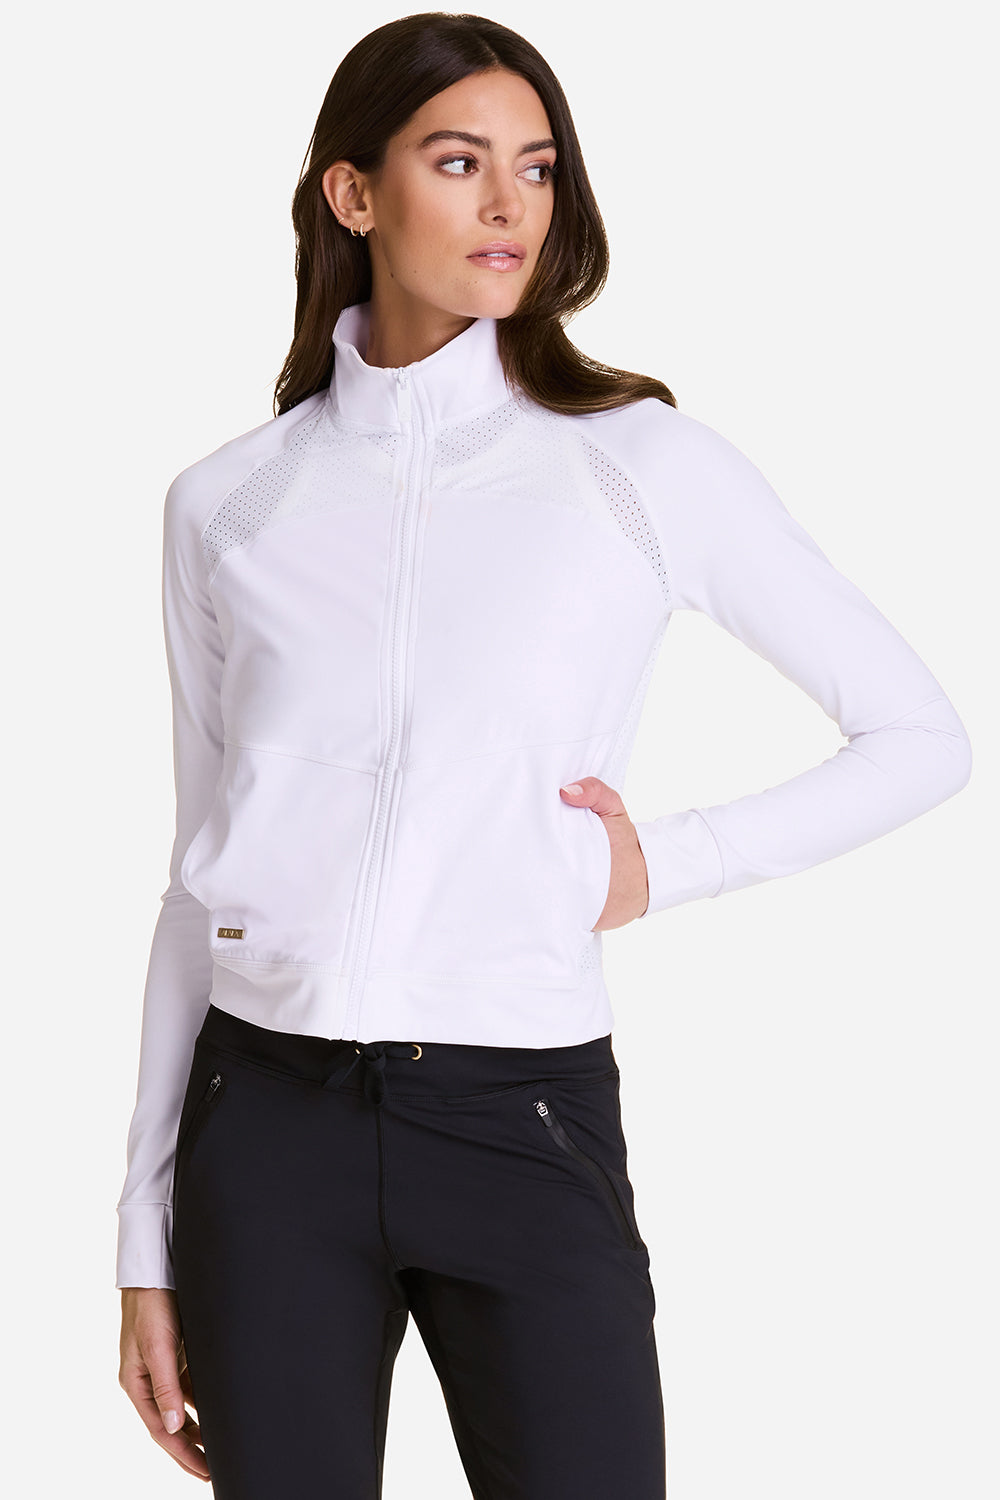 Alala women's tennis jacket in white